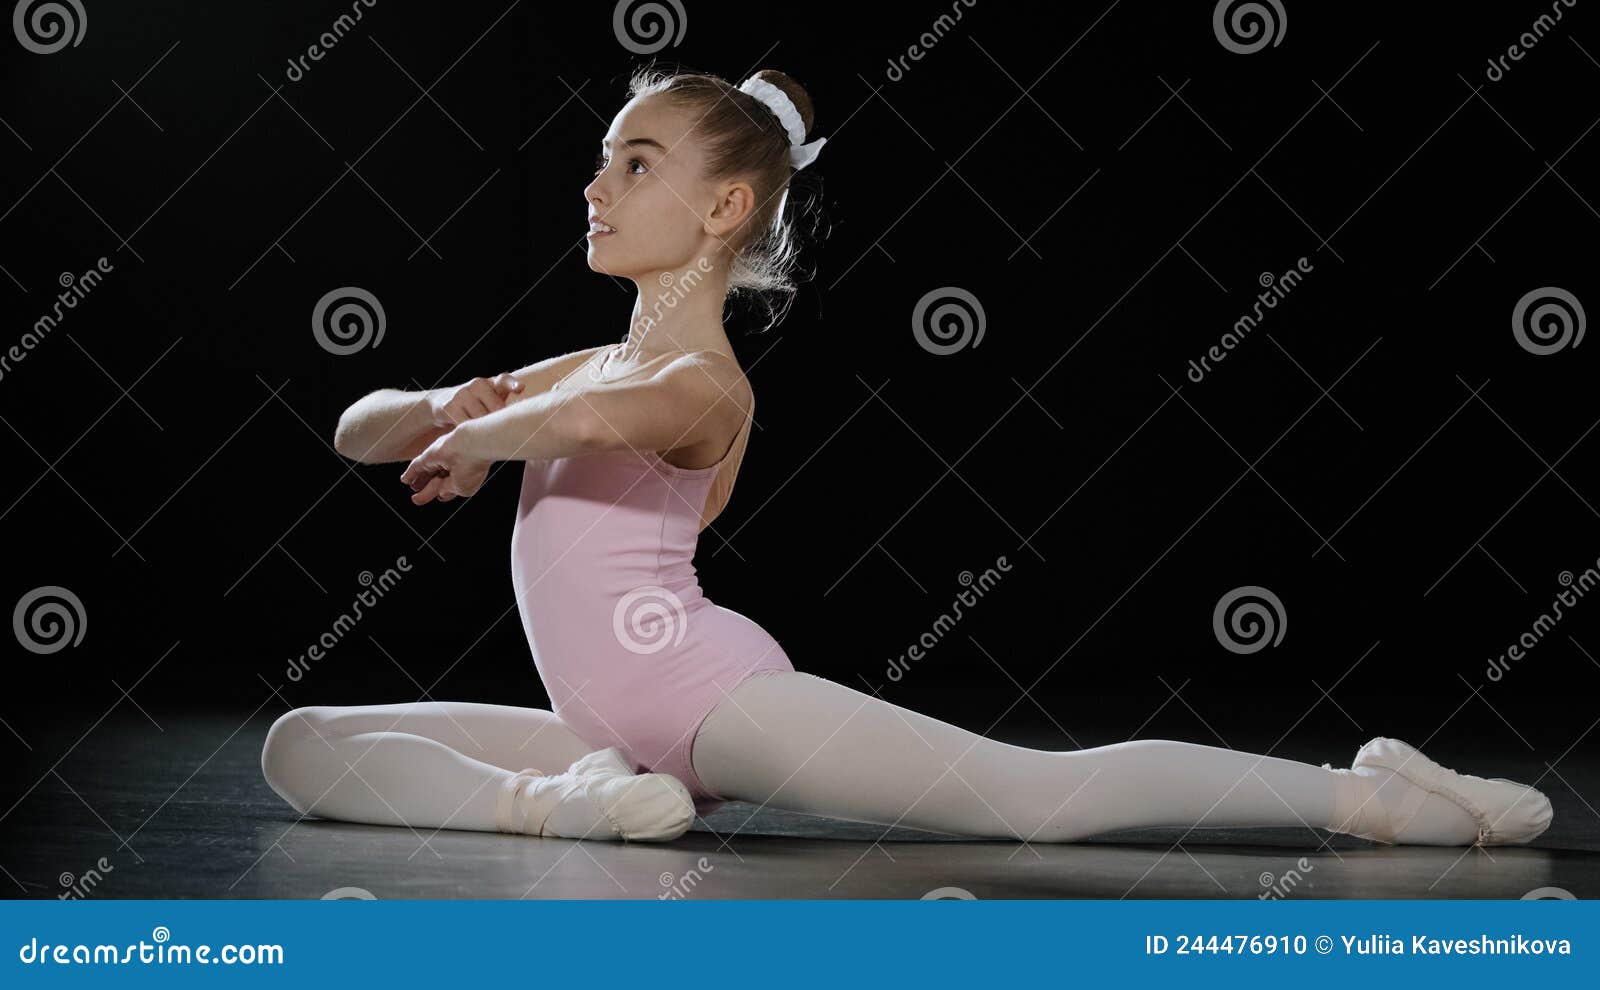 High School Dance Stretch and Flexibility